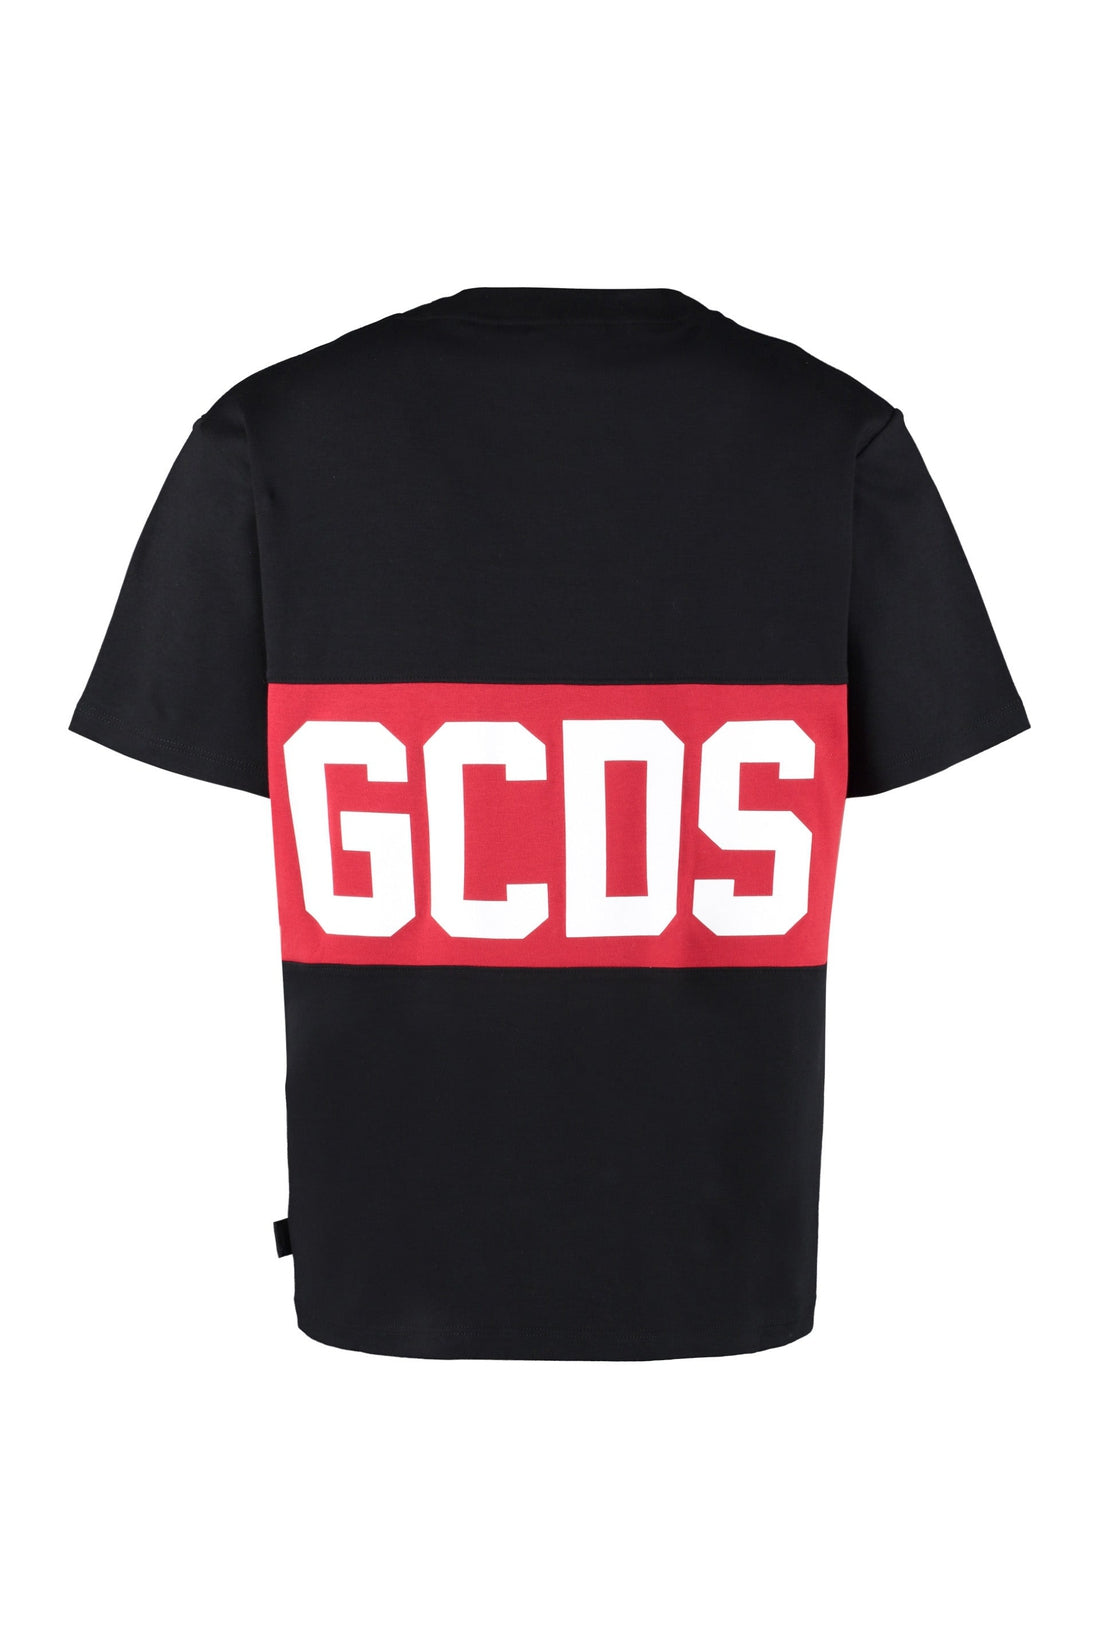 GCDS-OUTLET-SALE-Logo cotton t-shirt-ARCHIVIST